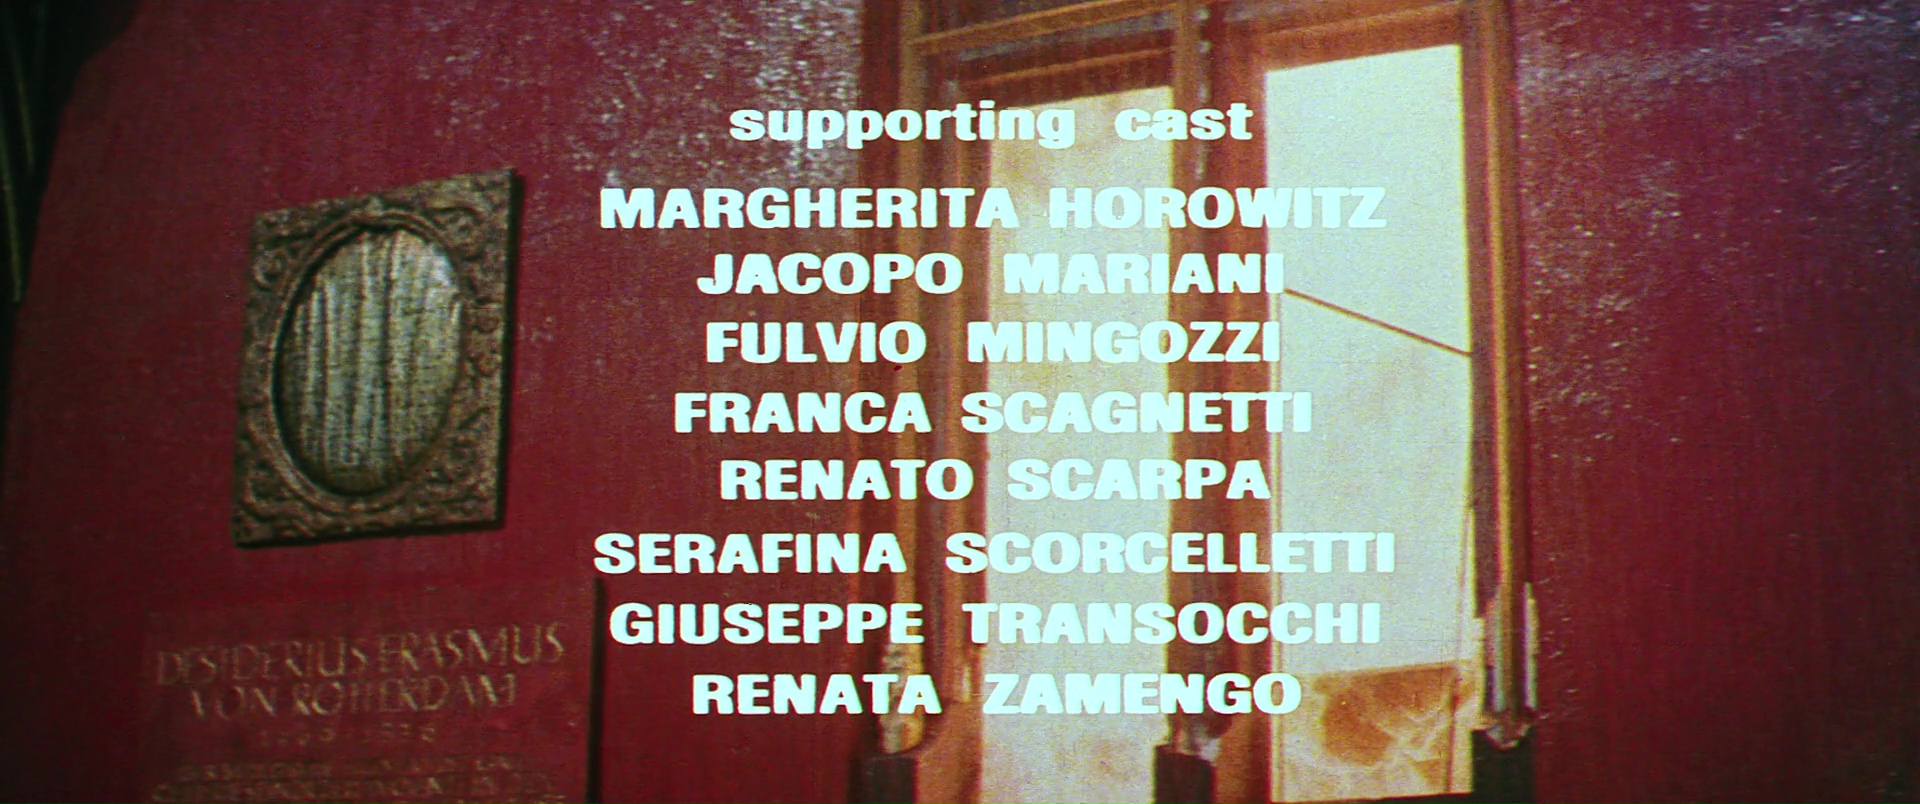 Suspiria (1977) 006.jpg